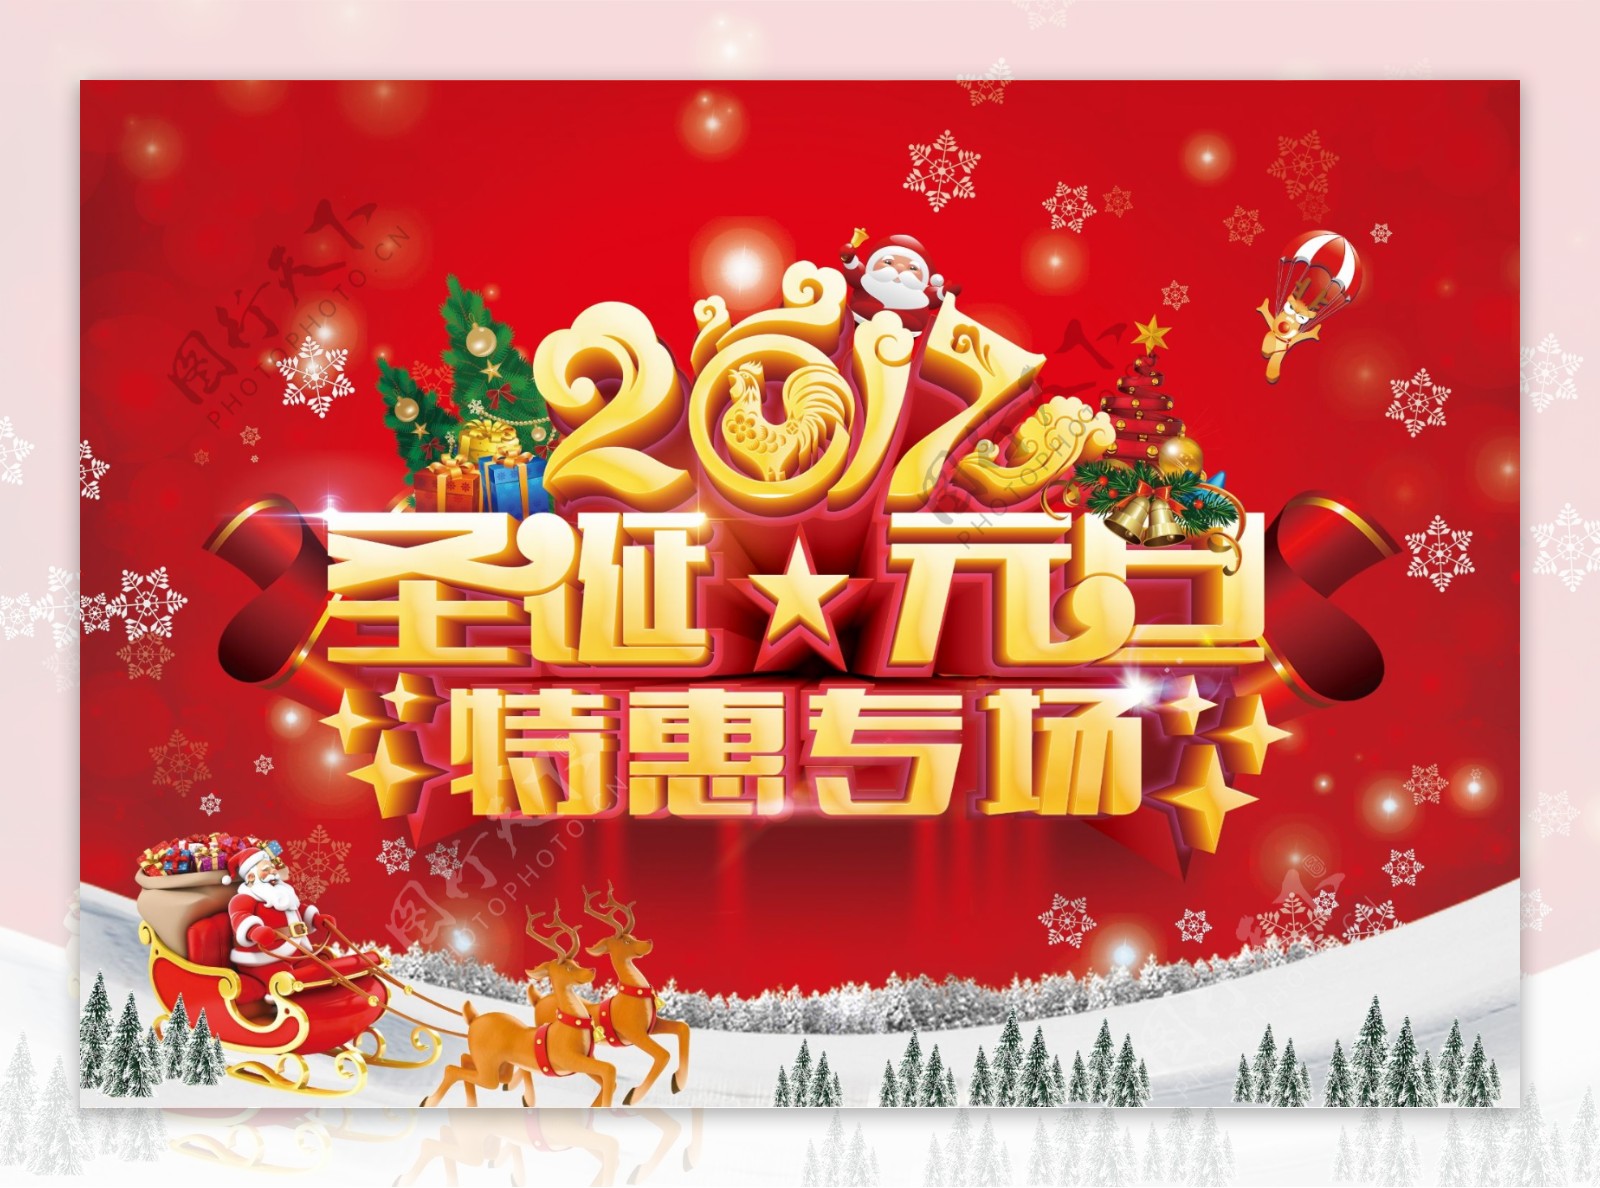 红色大气金色字体圣诞专场节日海报设计